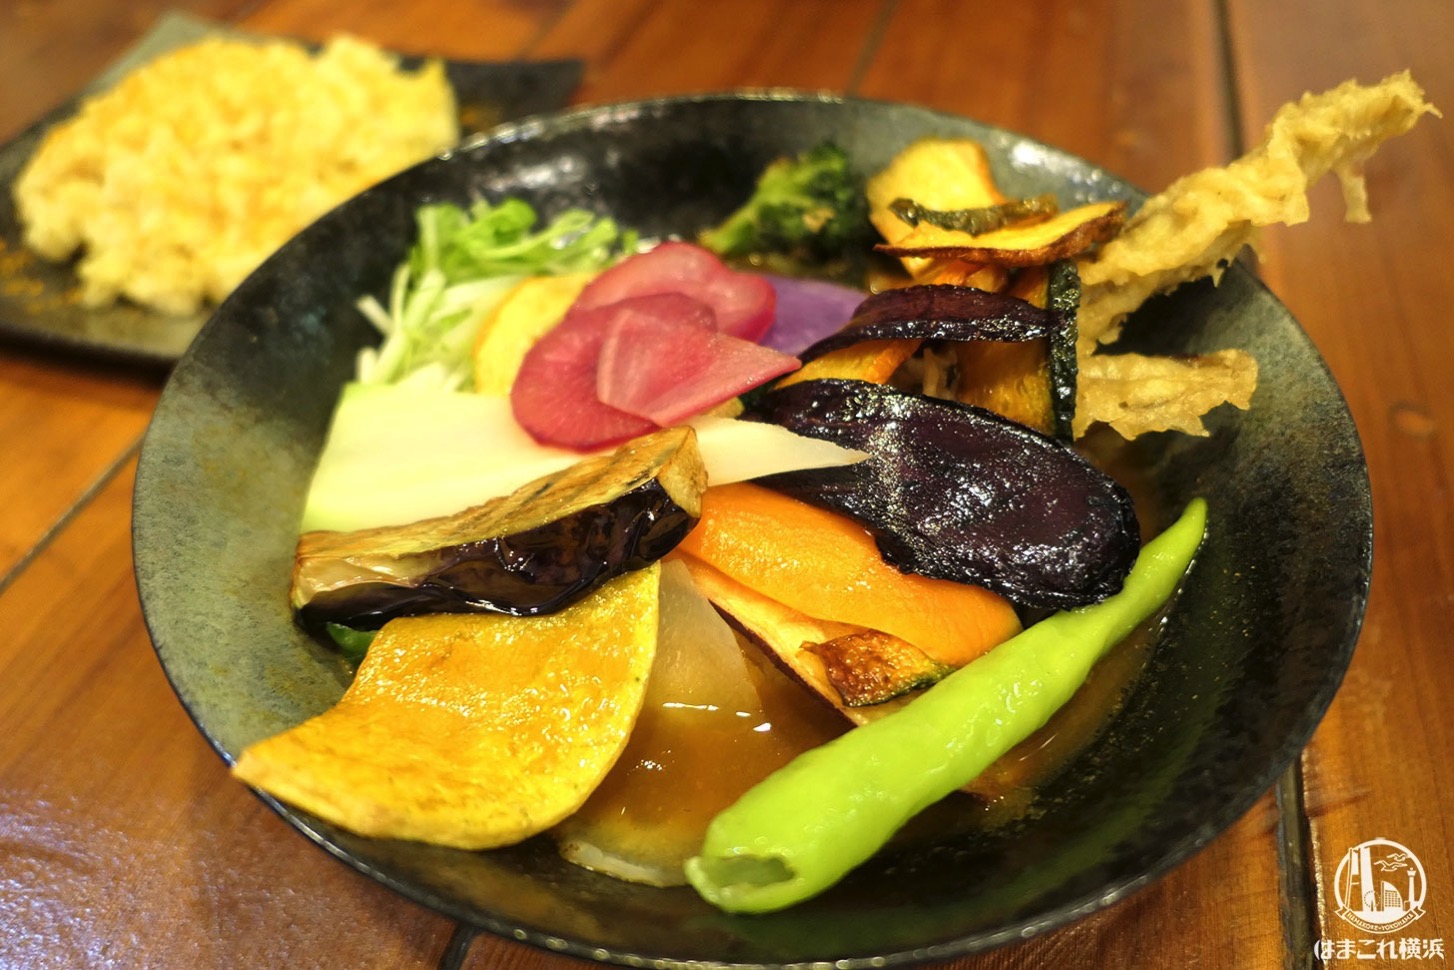 チキンと鎌倉野菜16品野菜のスープカレー